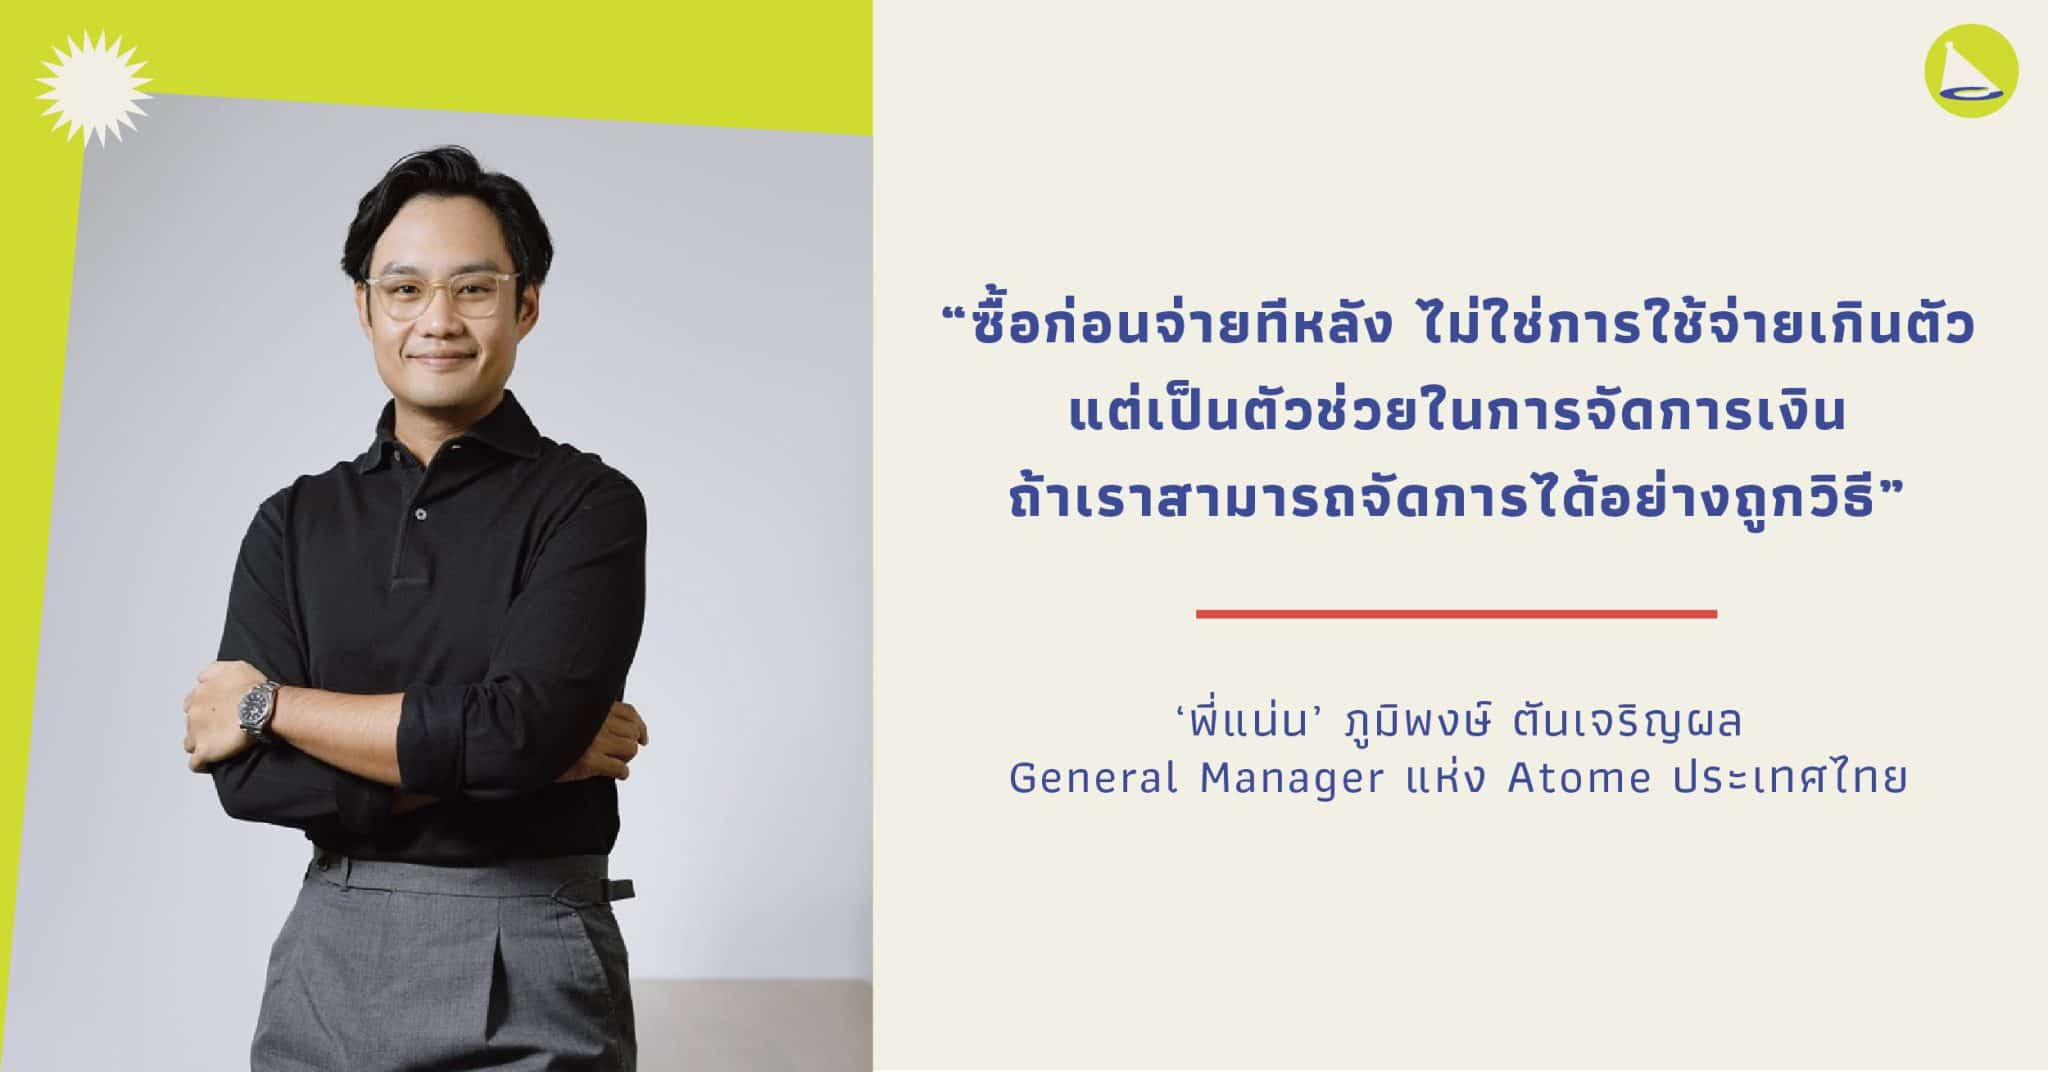 ภูมิพงษ์ ตันเจริญผล: ผู้บริหาร Atome บริการซื้อก่อนจ่ายที่หลัง อนาคตของการเงินไทย